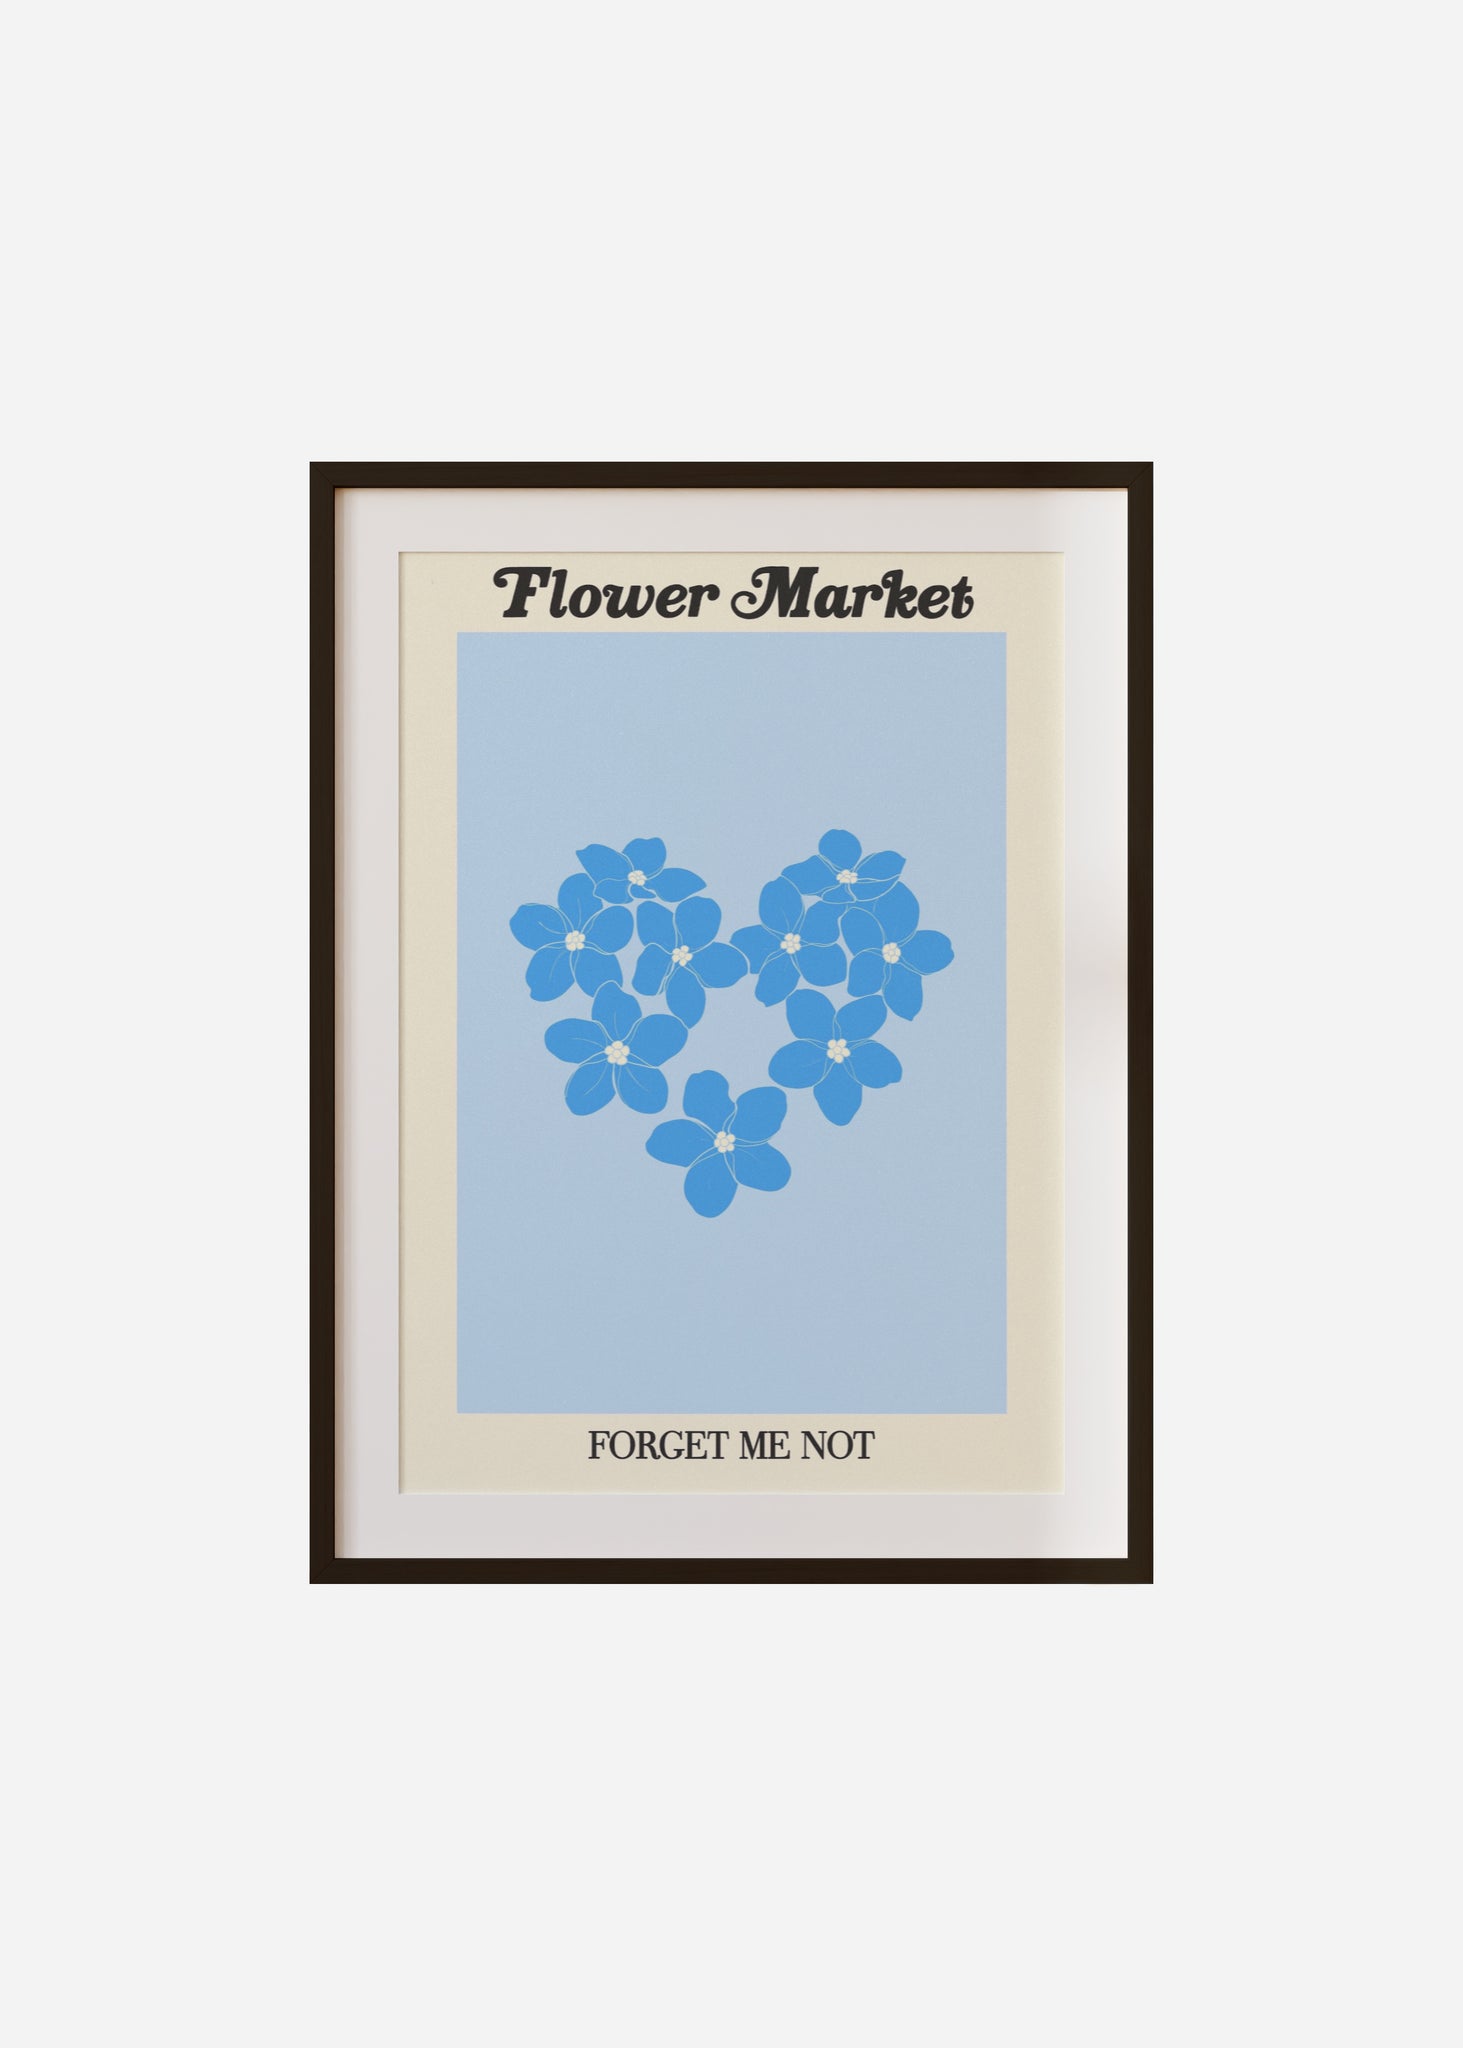 flower market / forget me not Framed & Mounted Print